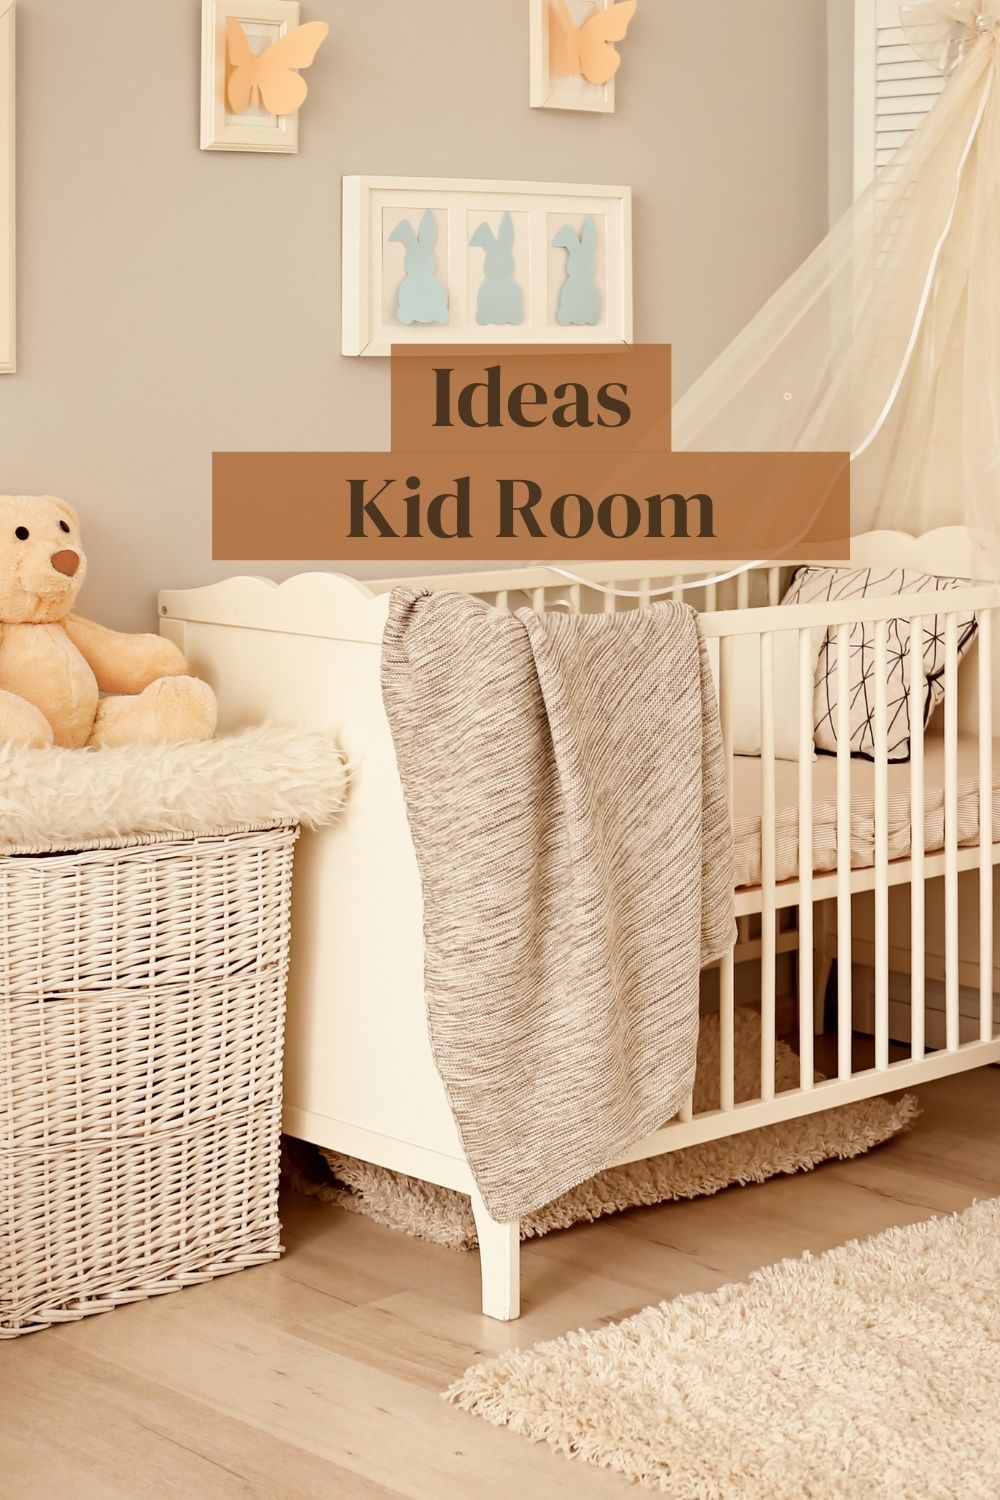 Kids room - Framing